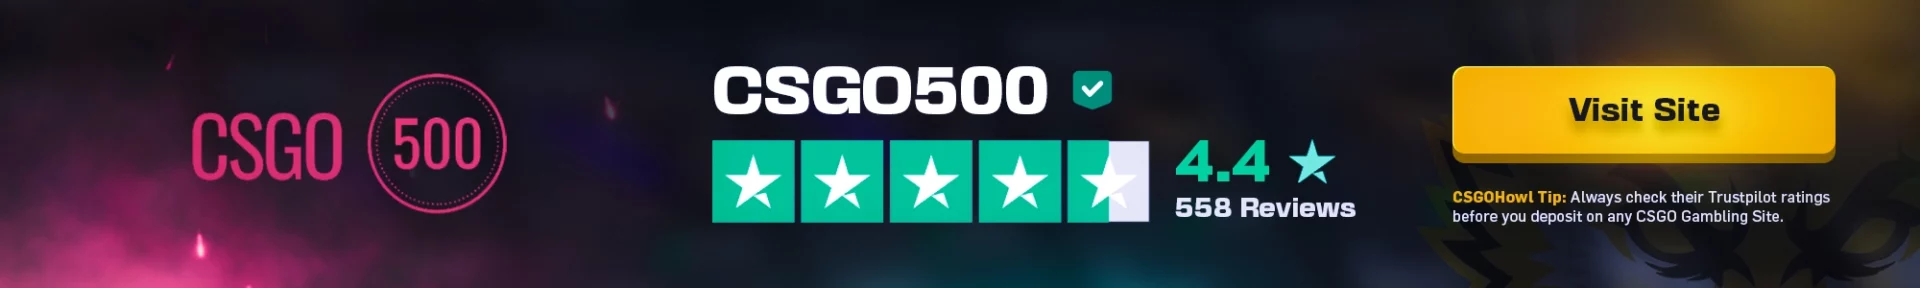 CSGO500 Trustpilot Reviews